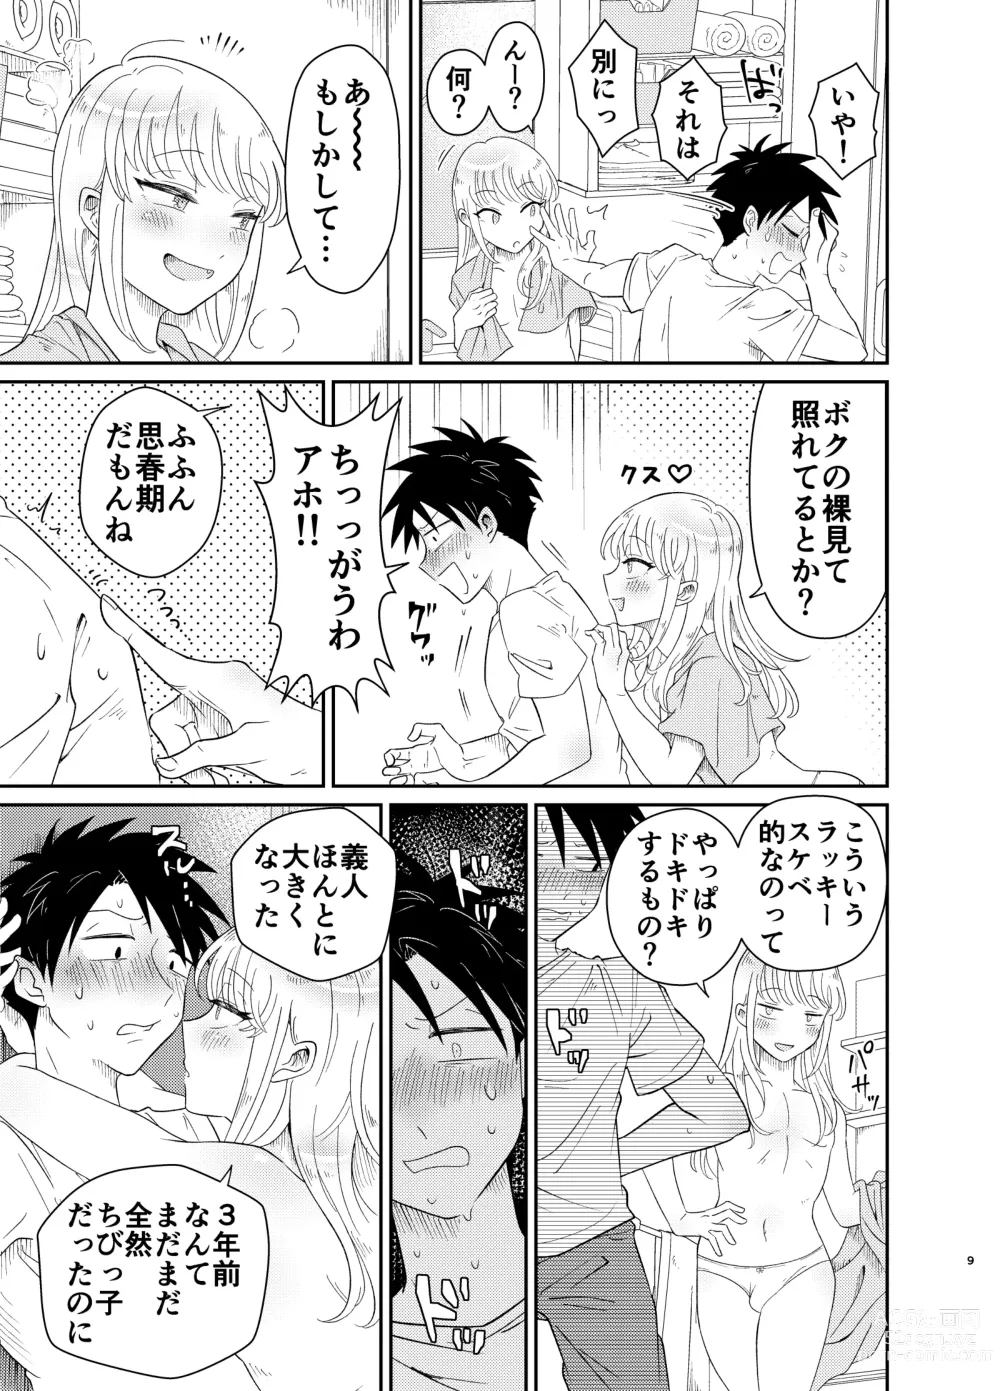 Page 9 of doujinshi Mechakucha Kawaikute Ecchi na Itoko wa Suki desu ka?